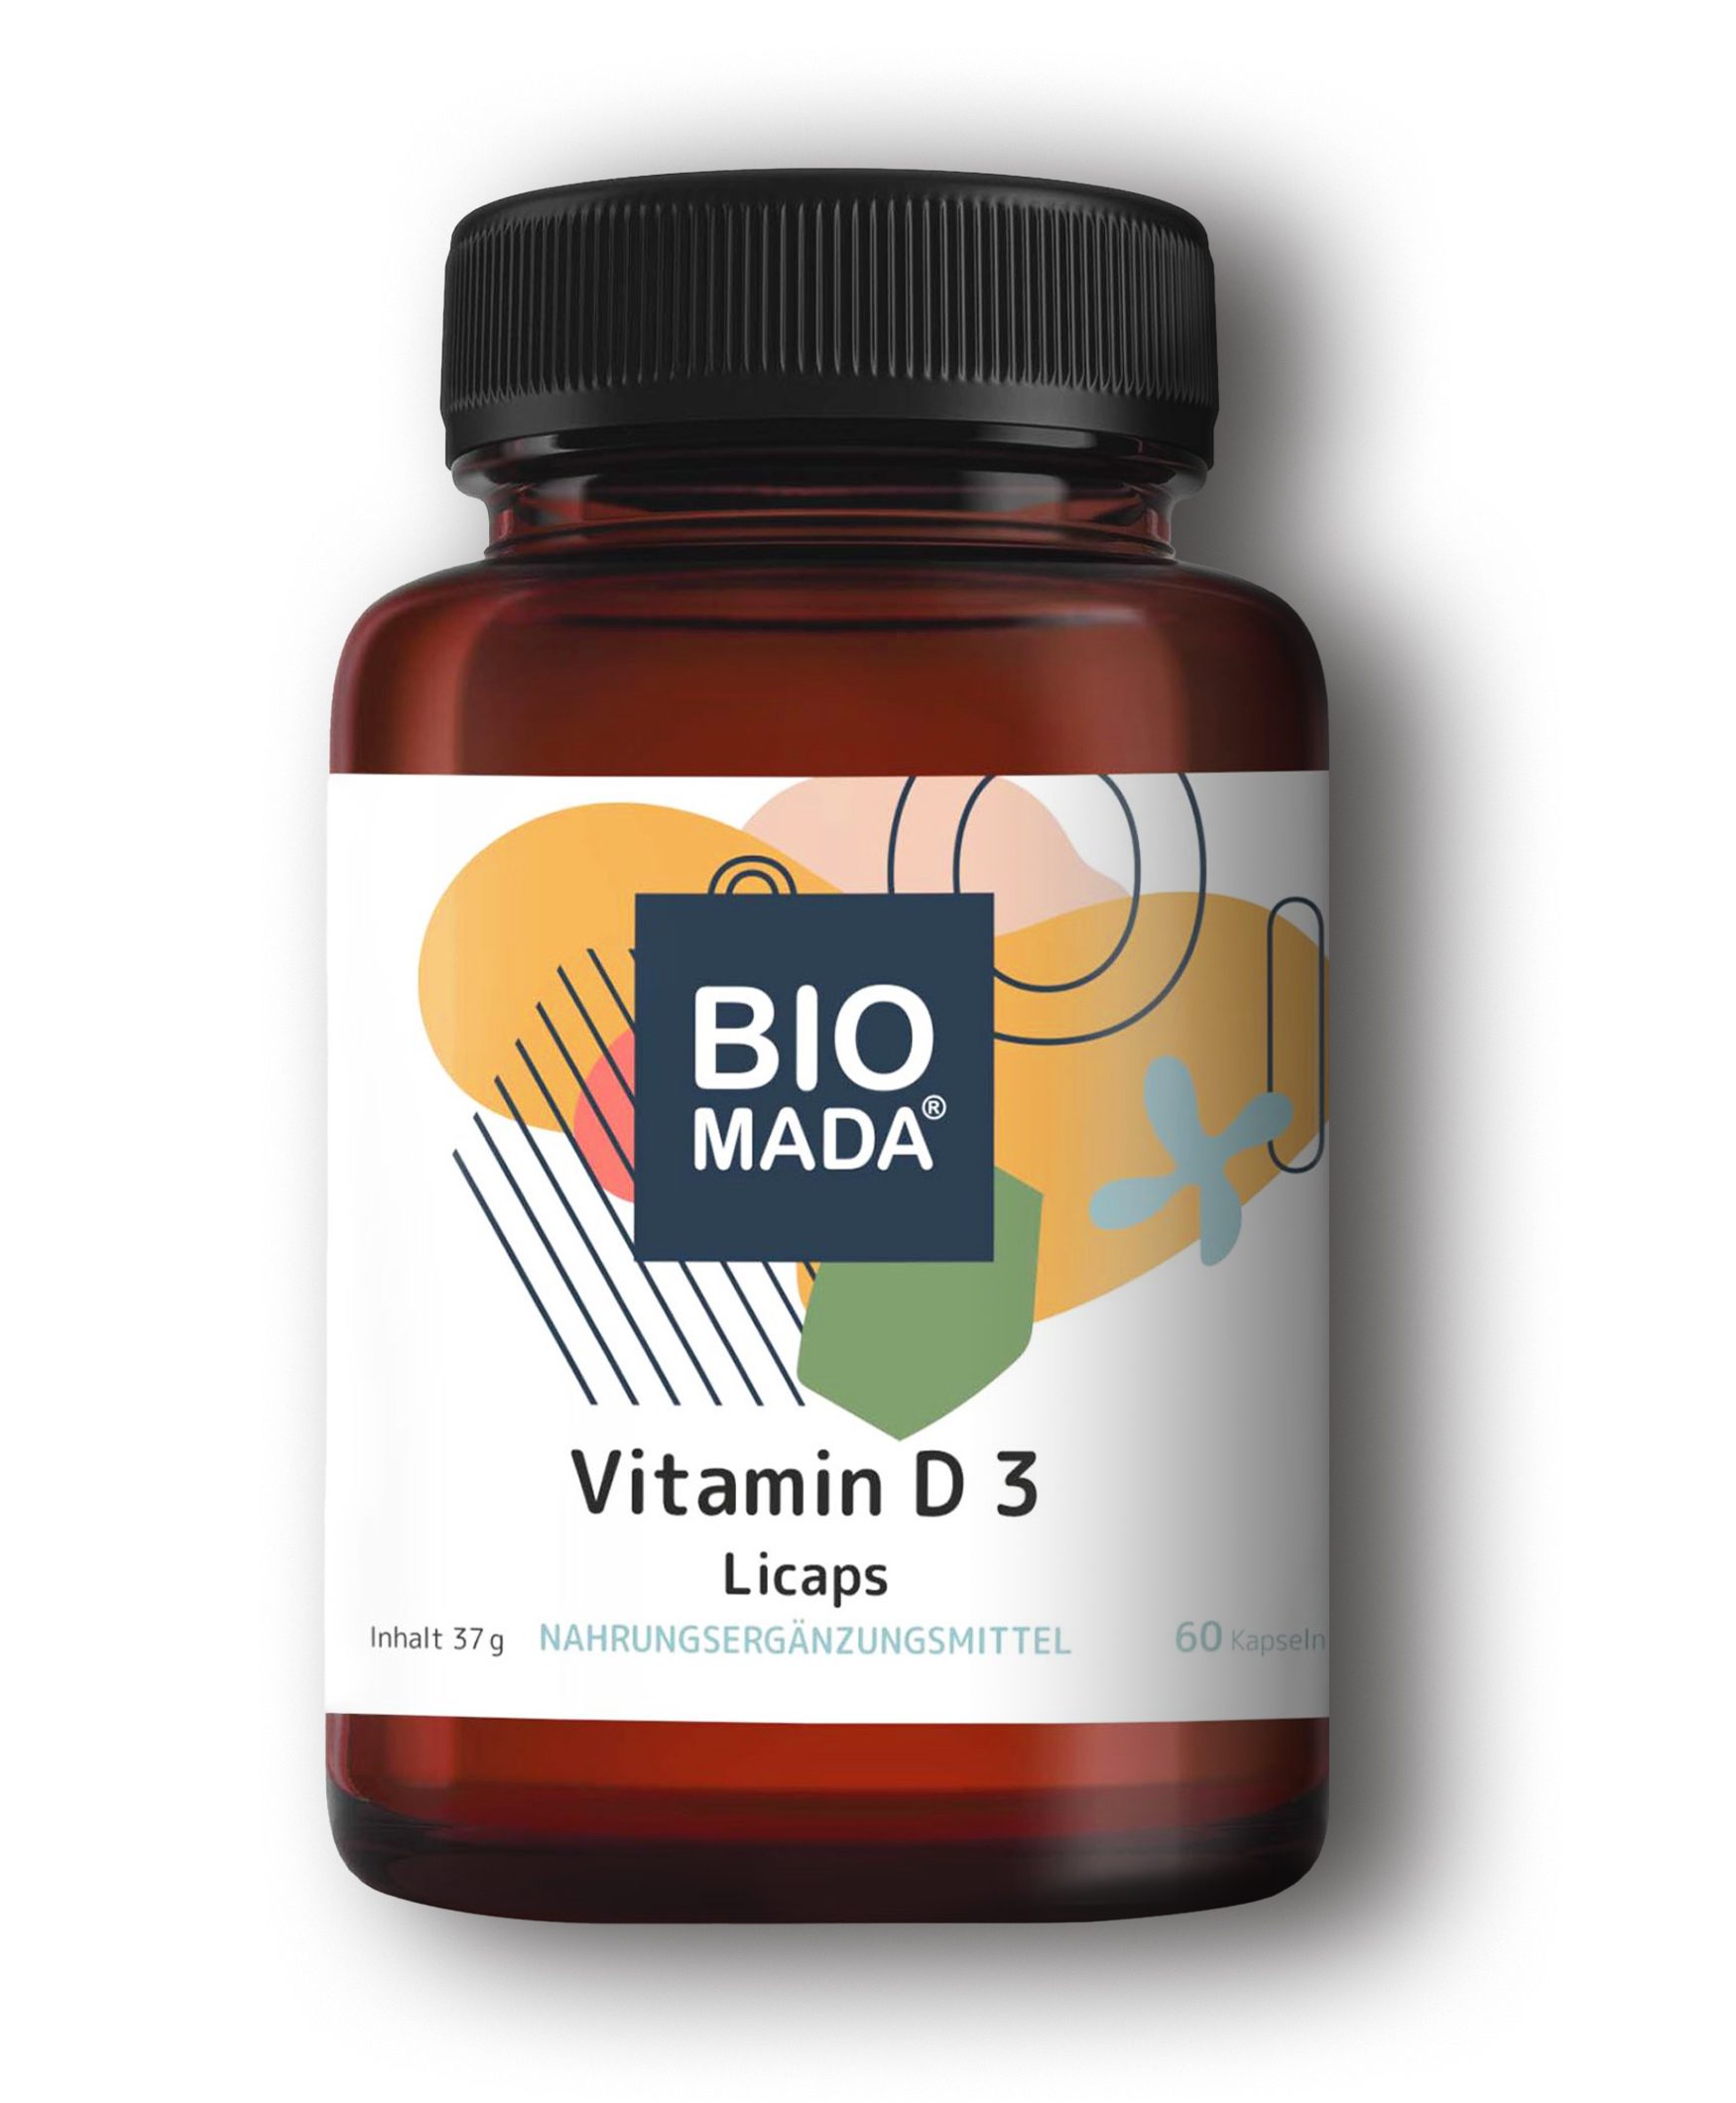 Vitamin D3 Licaps